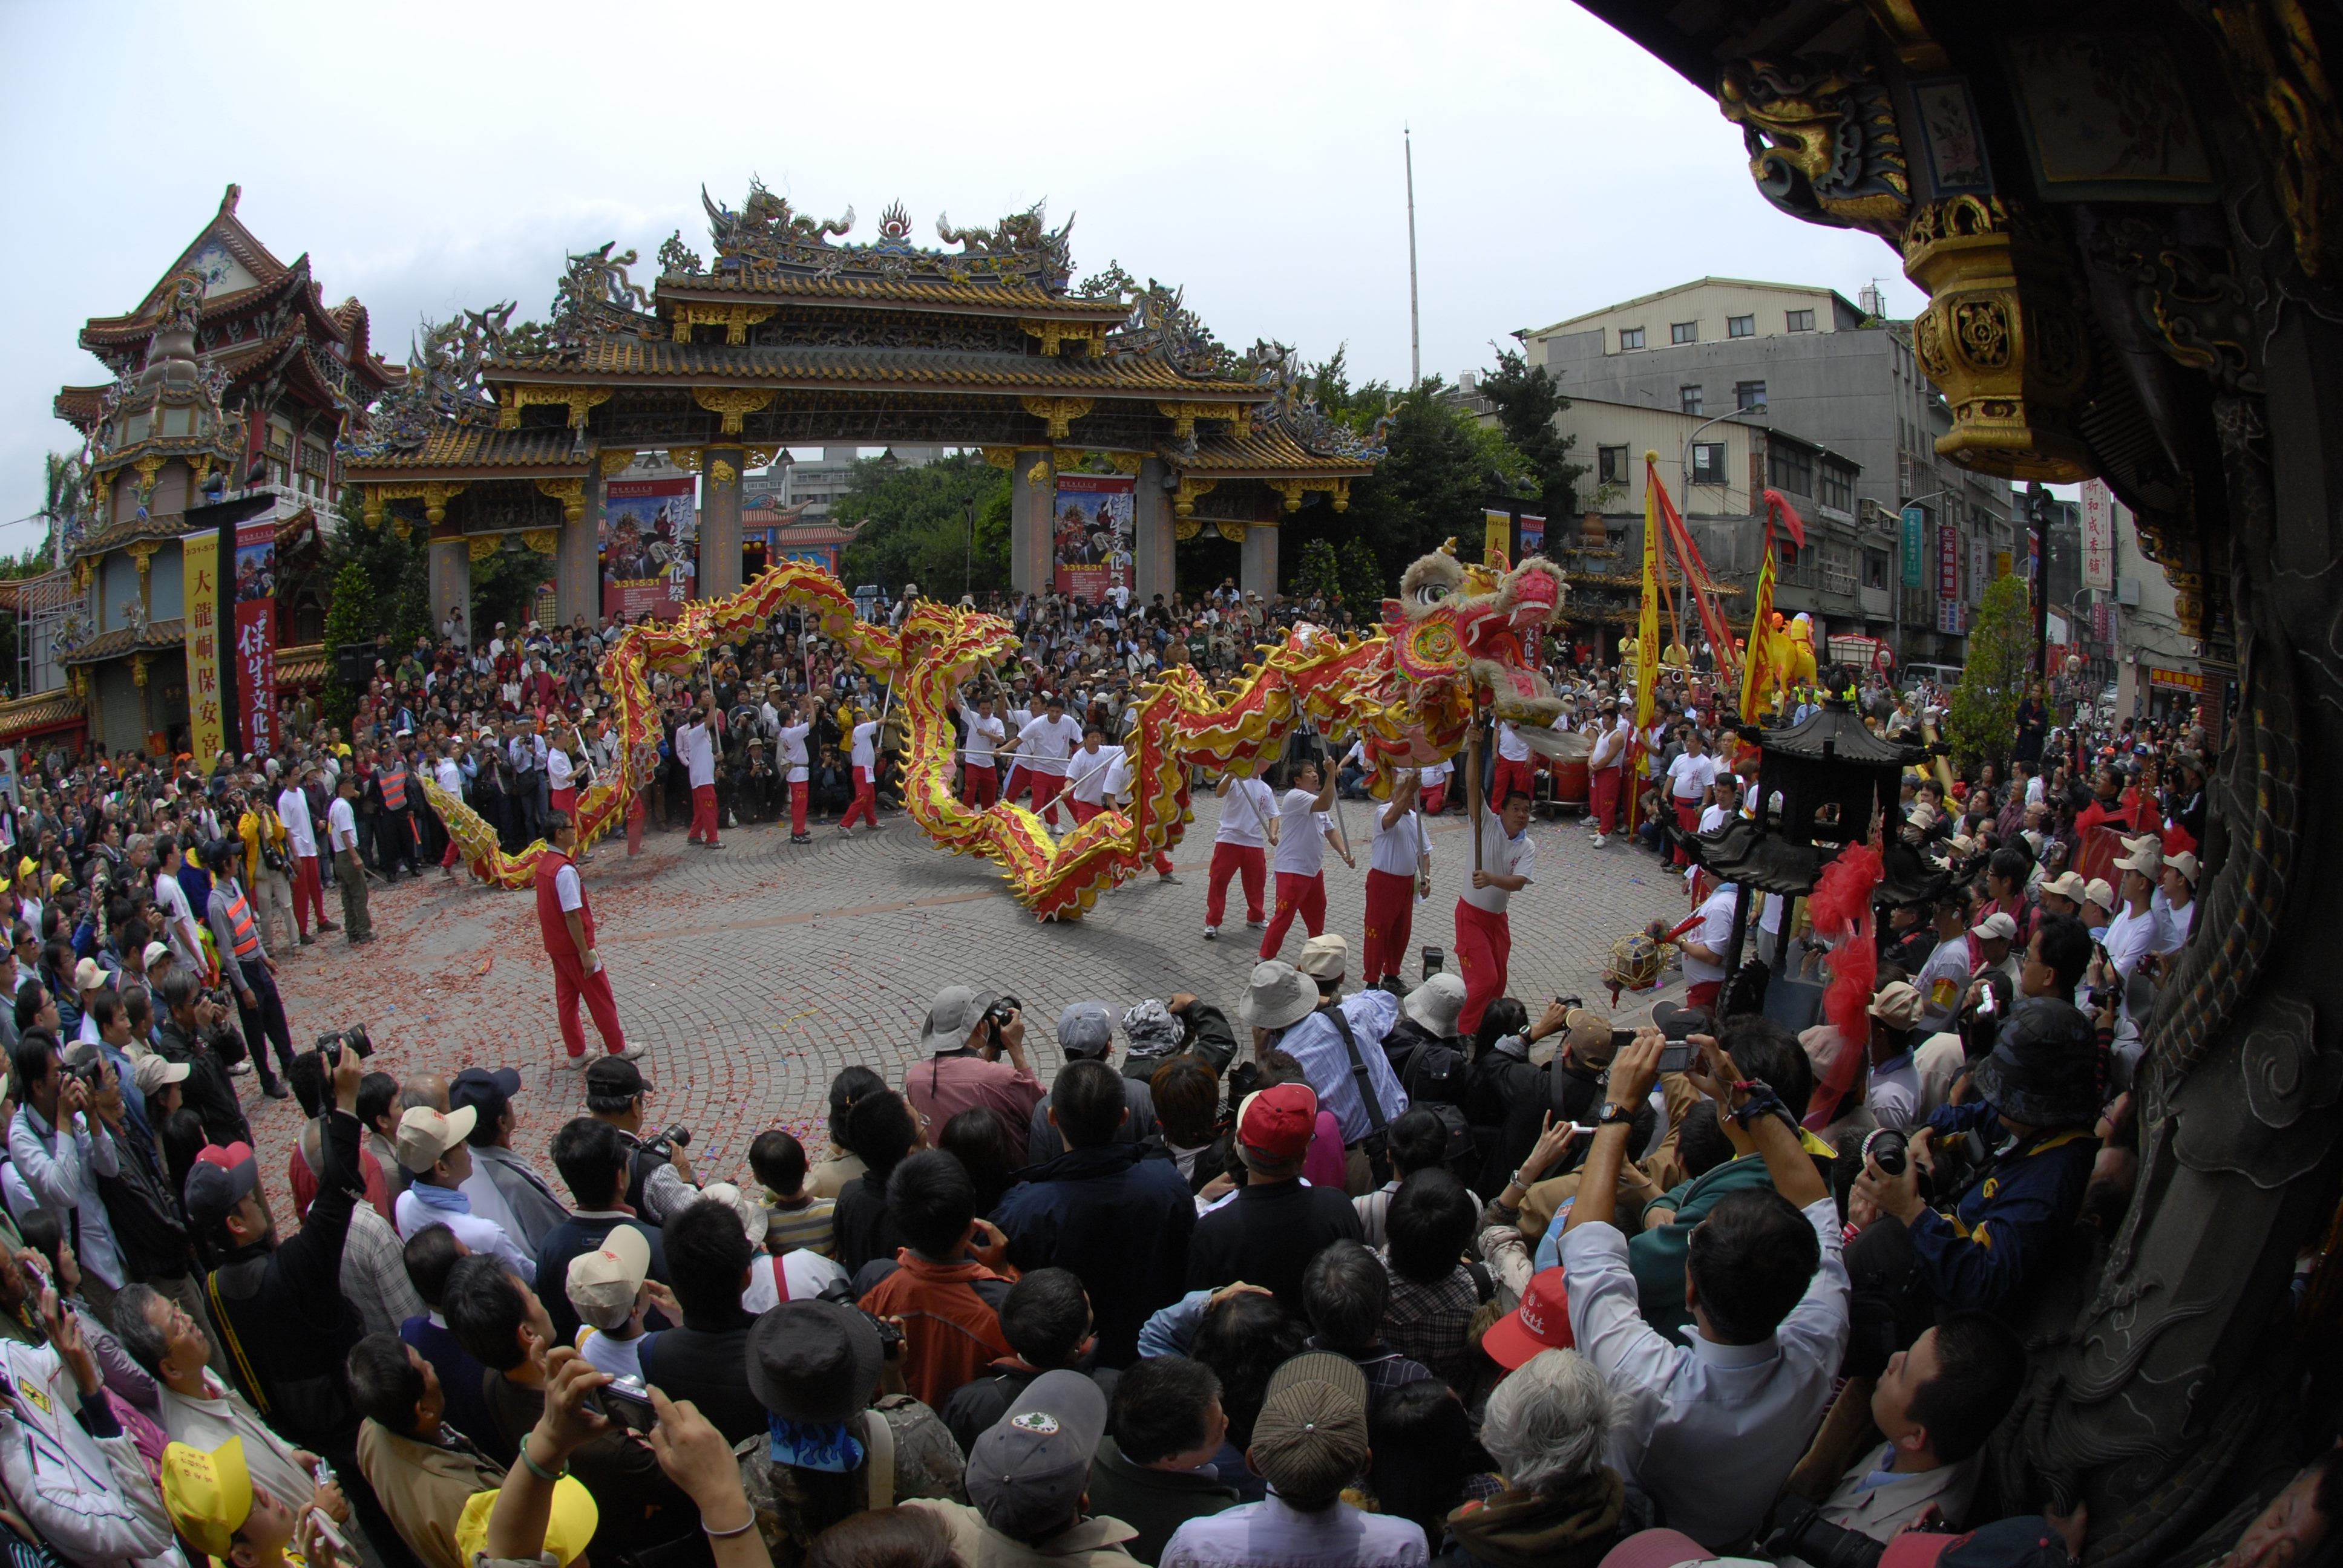 Baosheng Cultural Festival